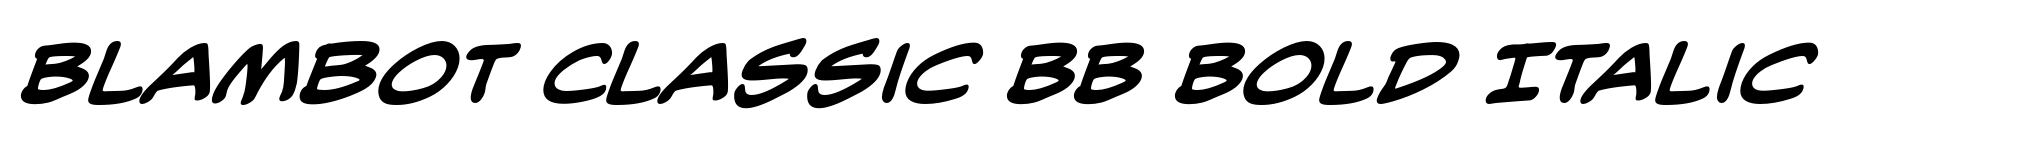 Blambot Classic BB Bold Italic image